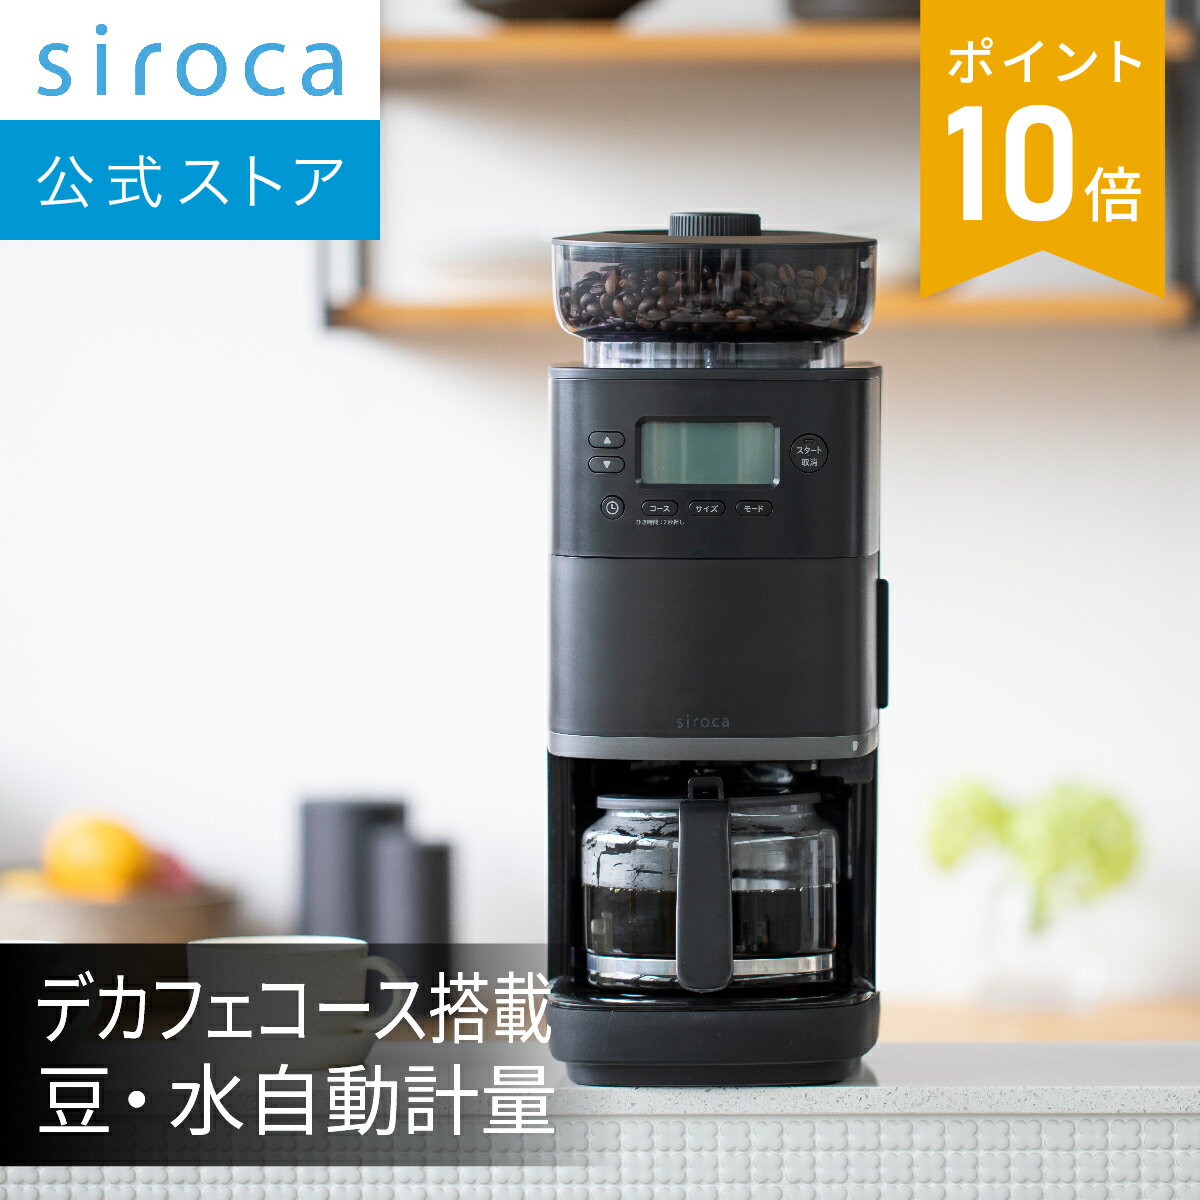 【シロカ公式】コーン式全自動コーヒーメー